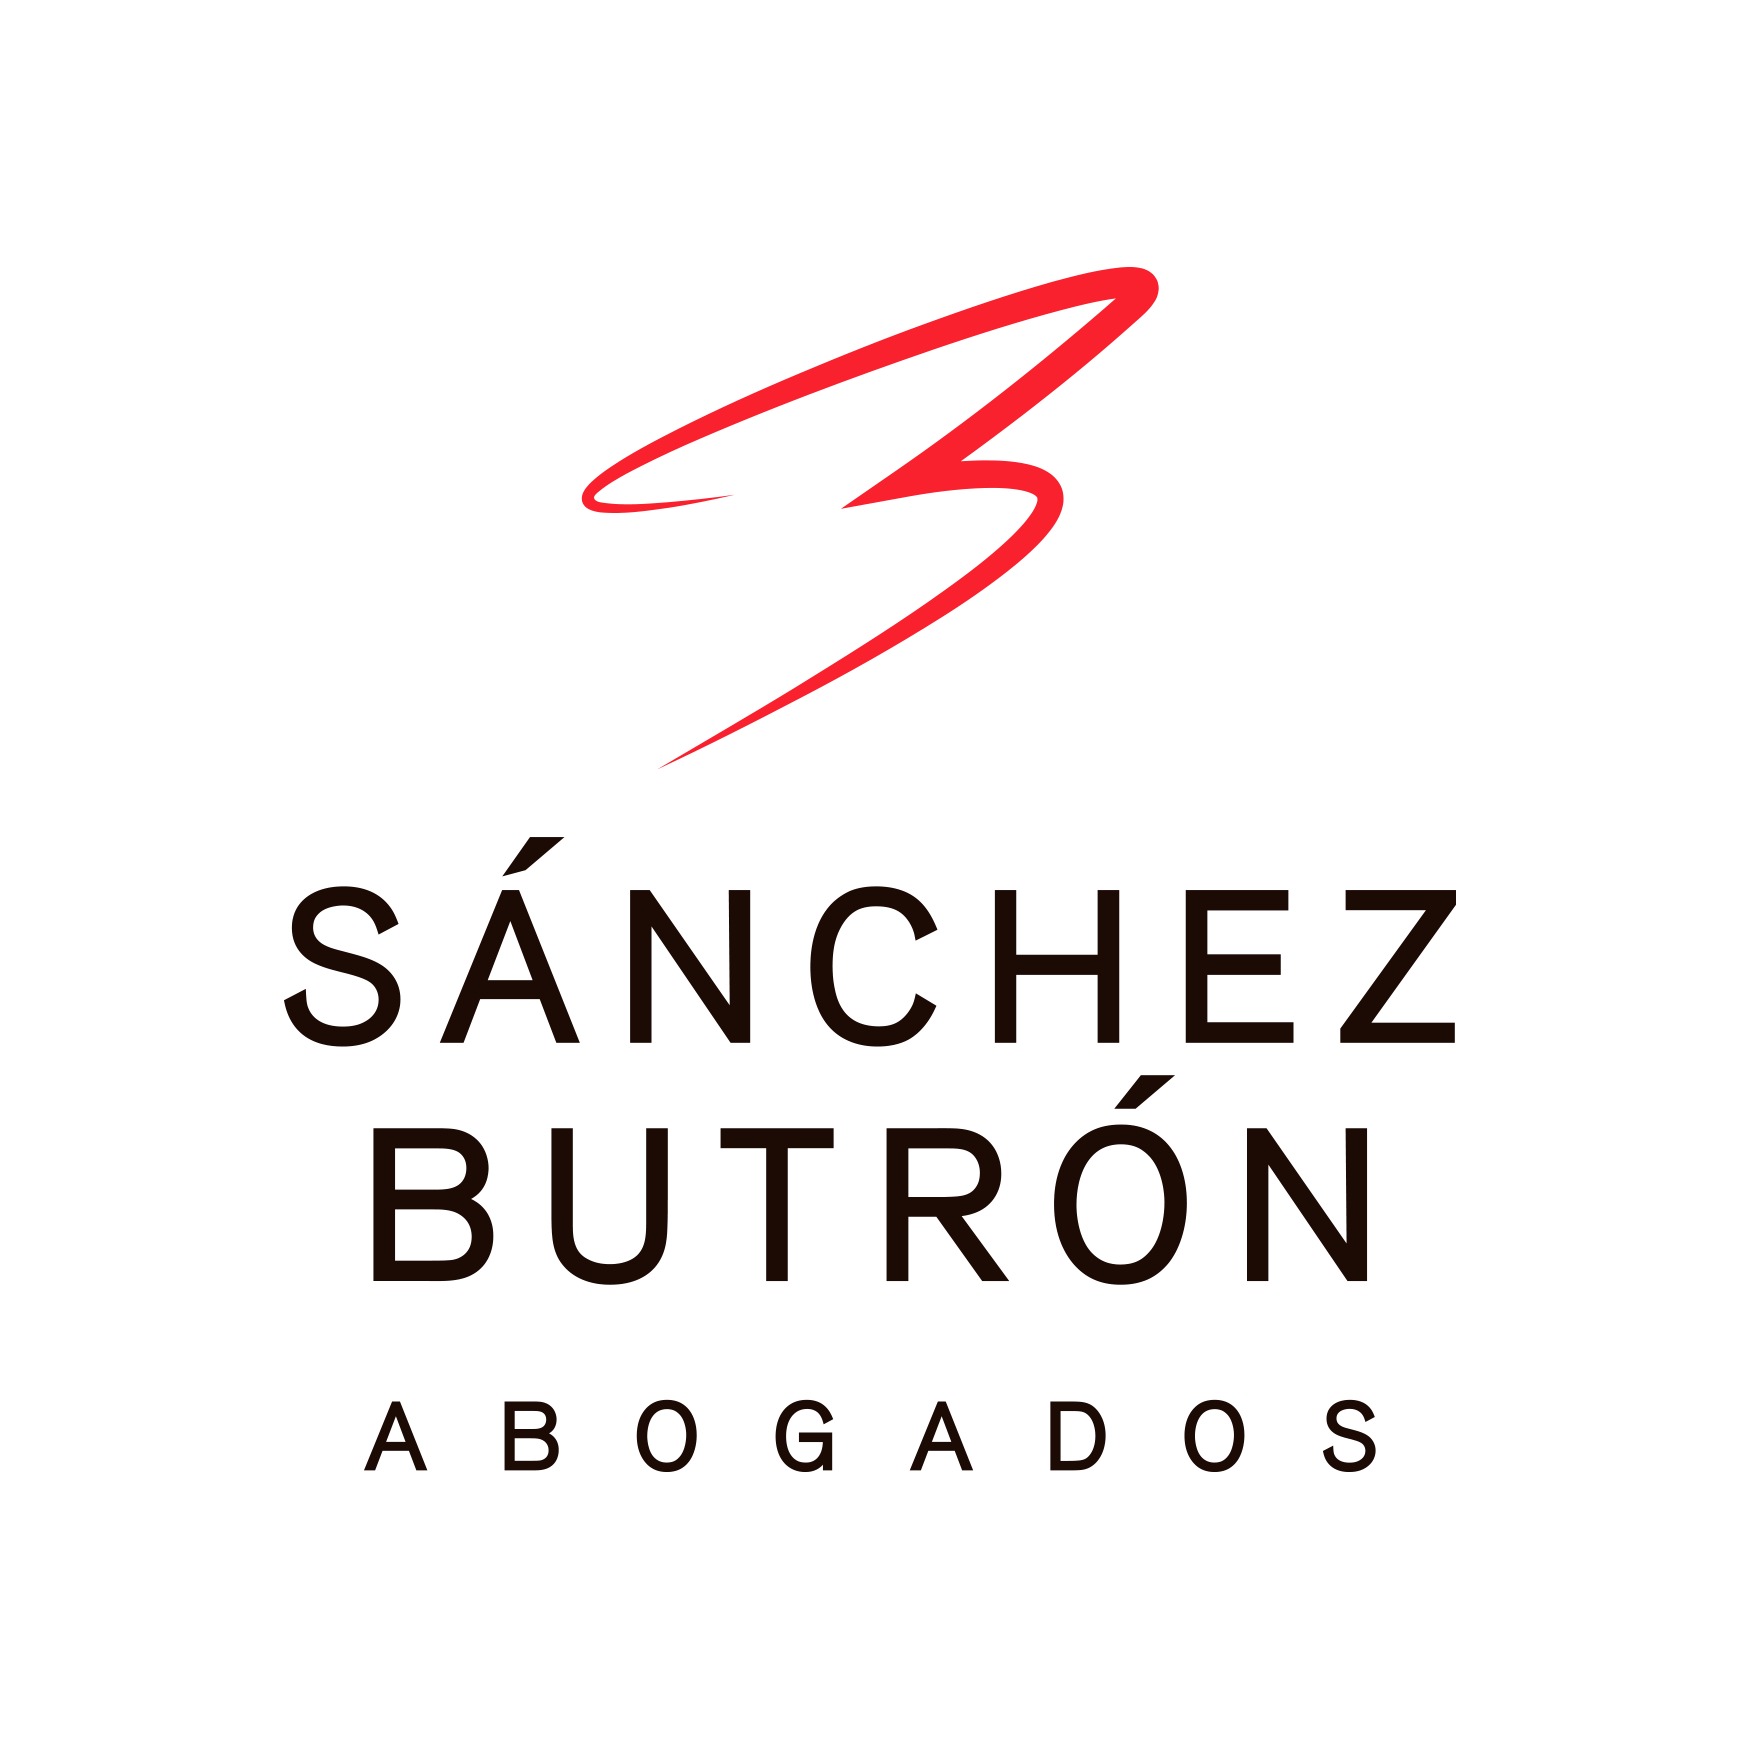 Sánchez Butrón Abogados